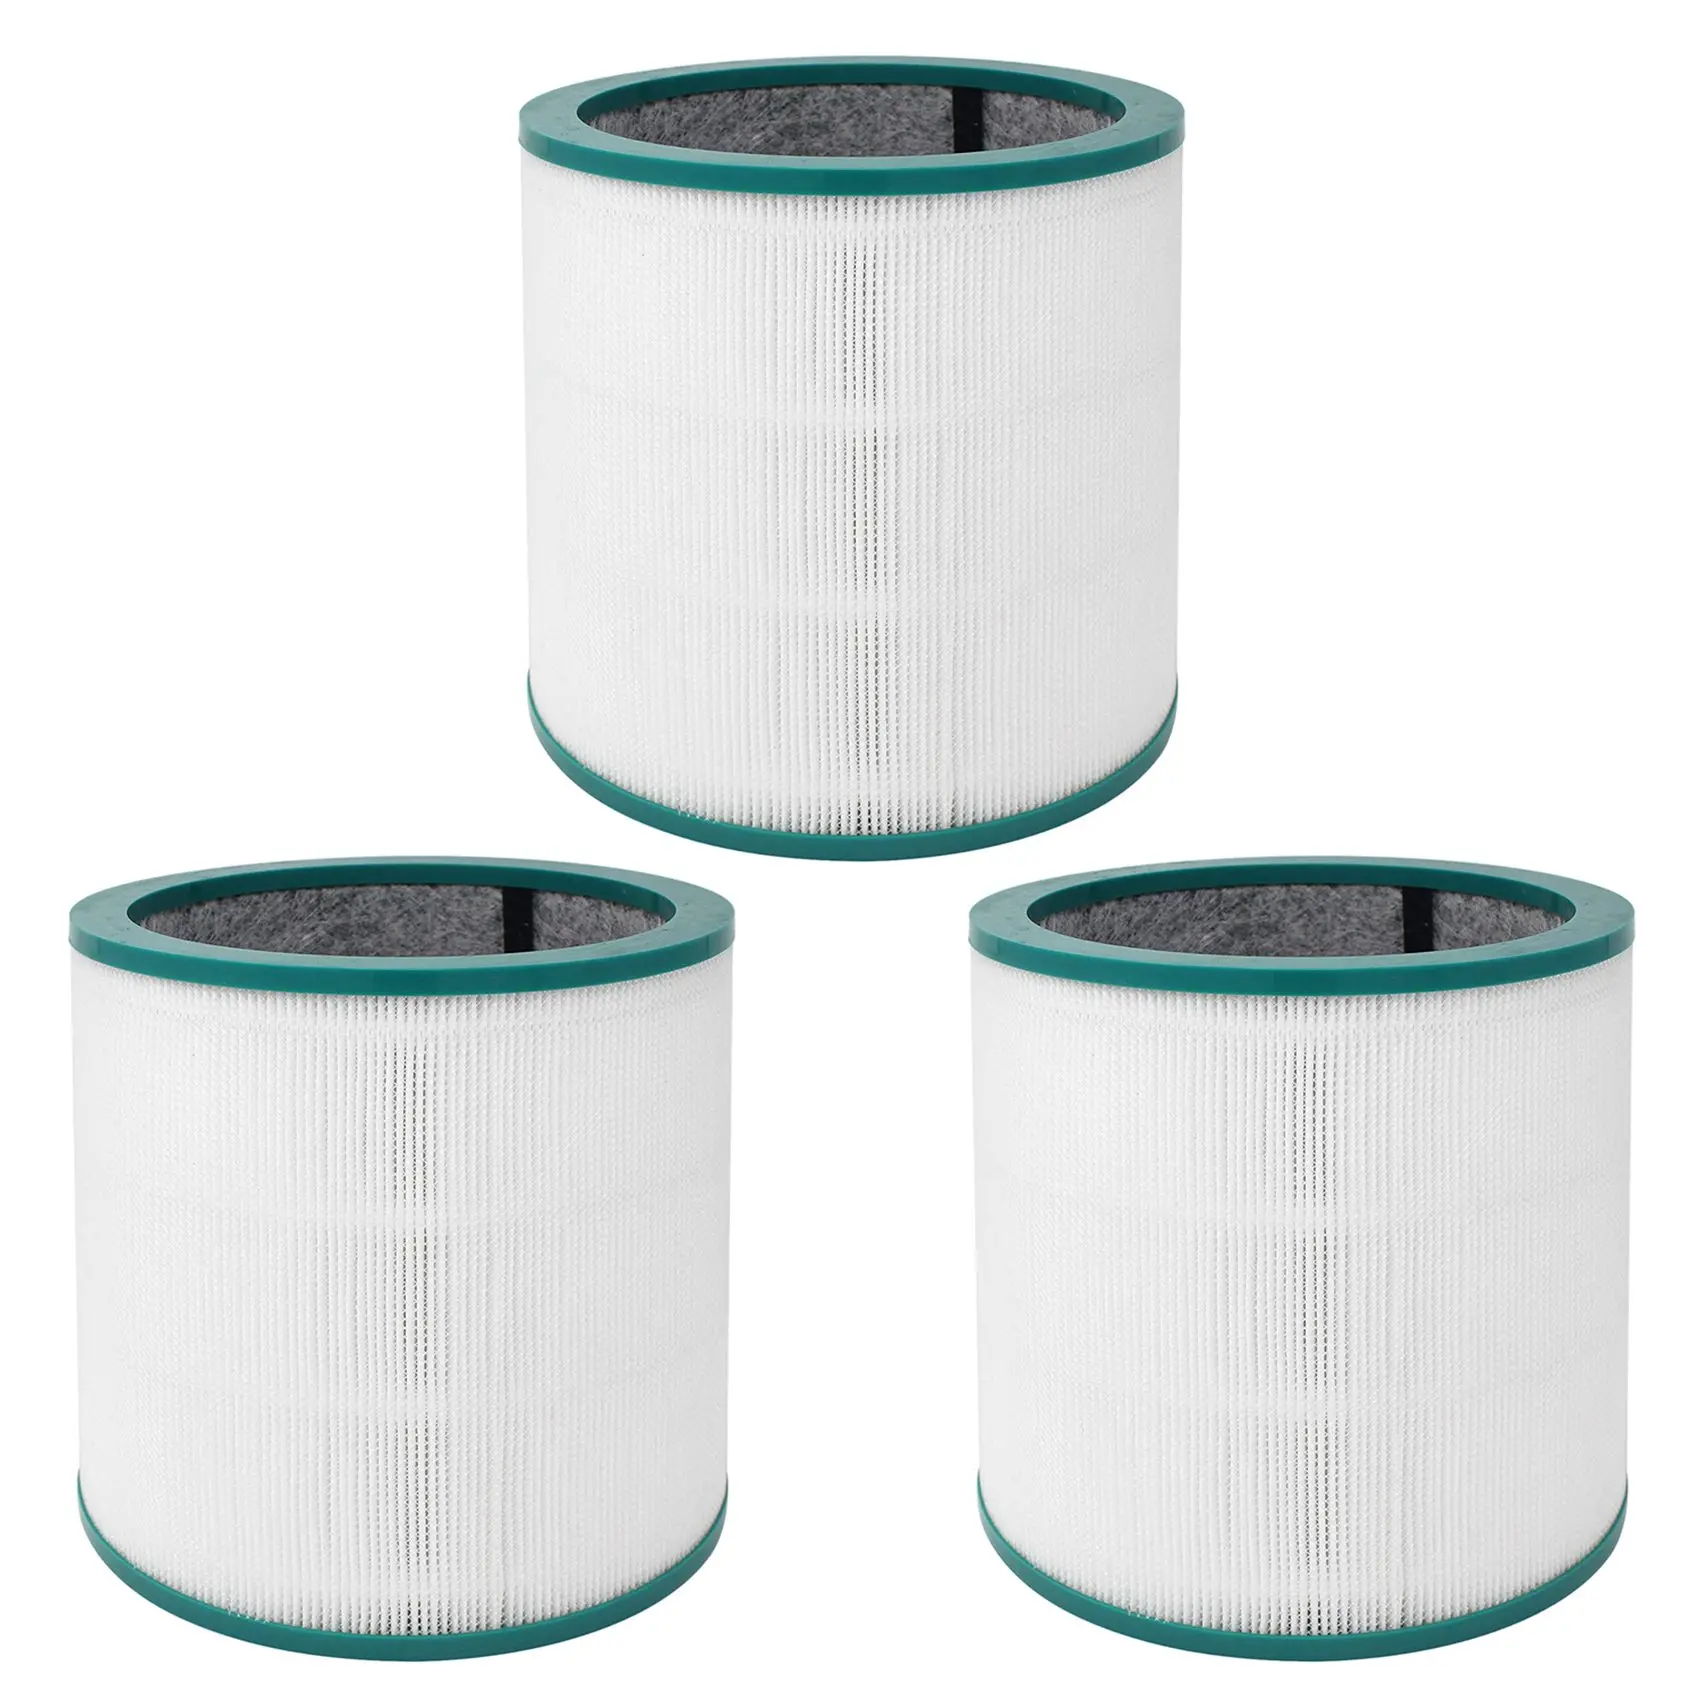 Фильтры для очистки воздуха 3X, совместимые для башенного очистителя TP00/03/02/ Модели AM11/BP01 - 0